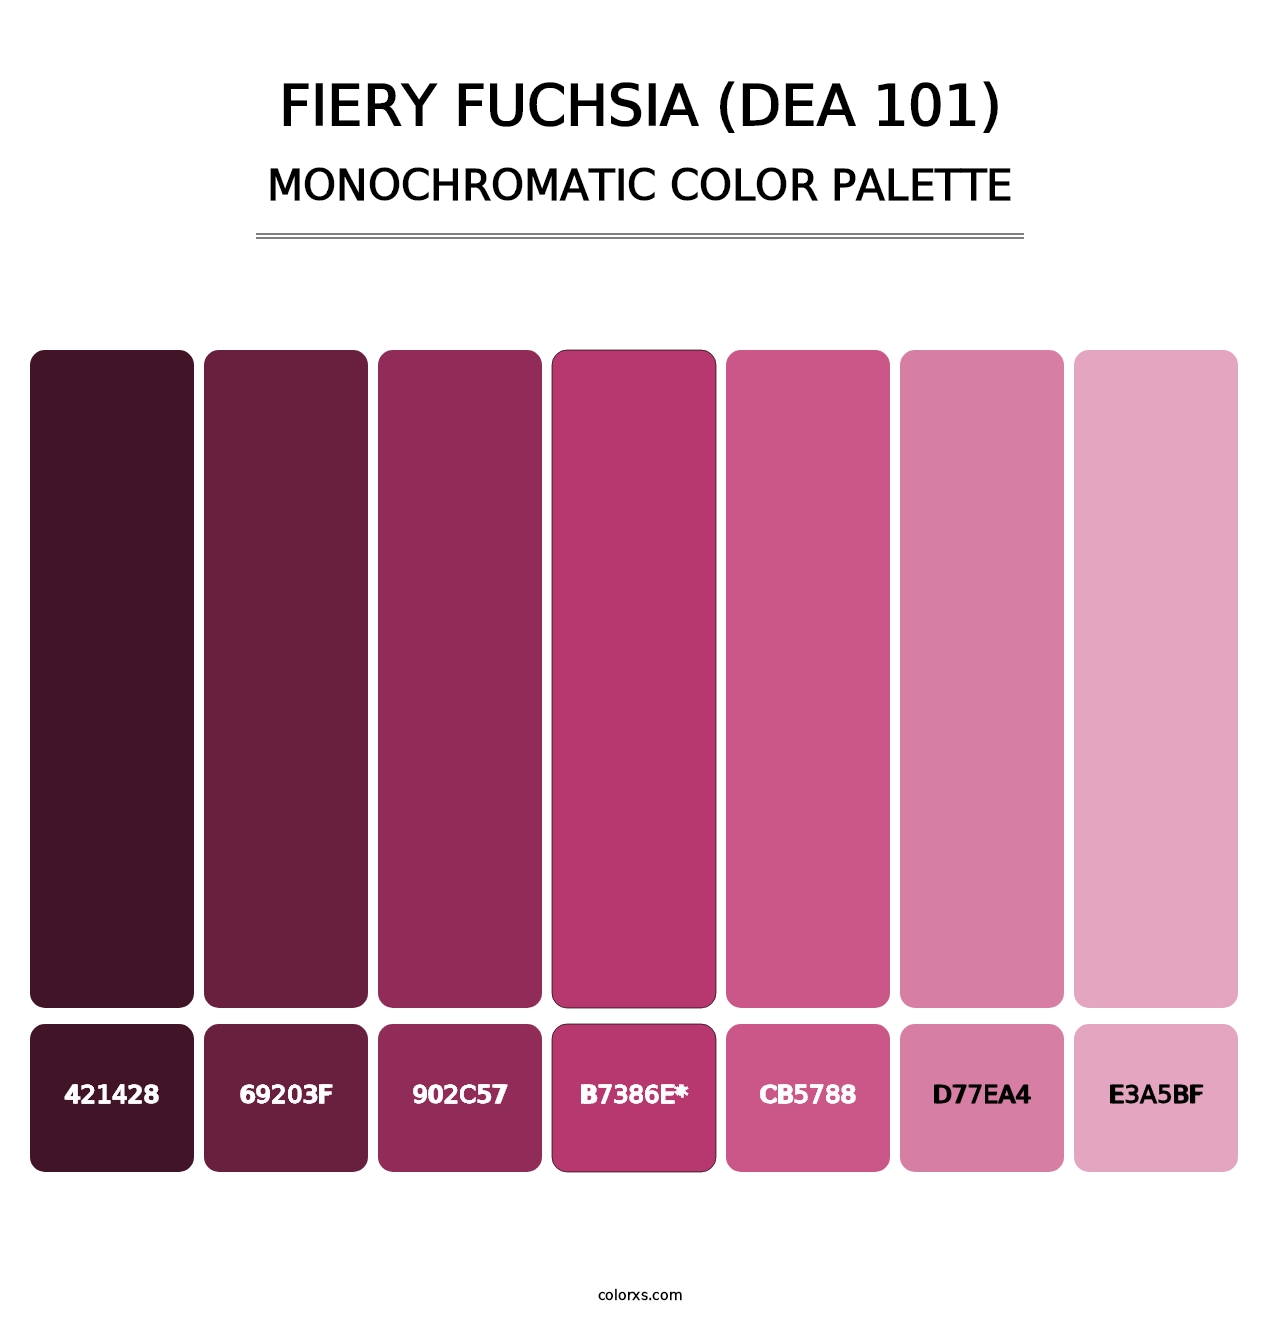 Fiery Fuchsia (DEA 101) - Monochromatic Color Palette